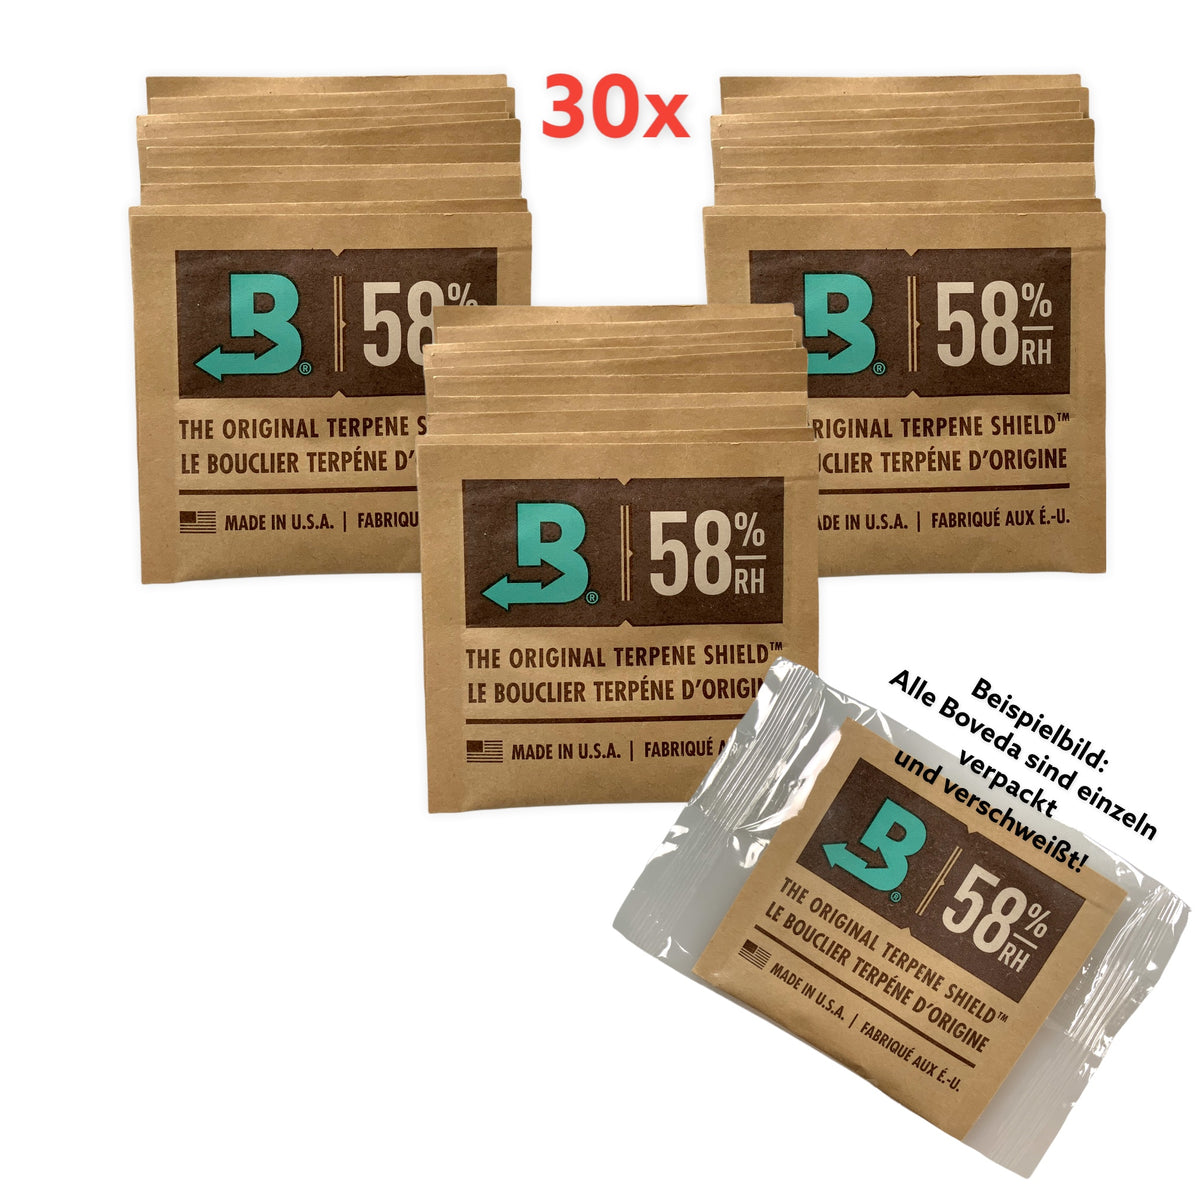 Boveda 30 x Humidipak 62% 8g "Einzeln Verpackt" Profi-Pack 